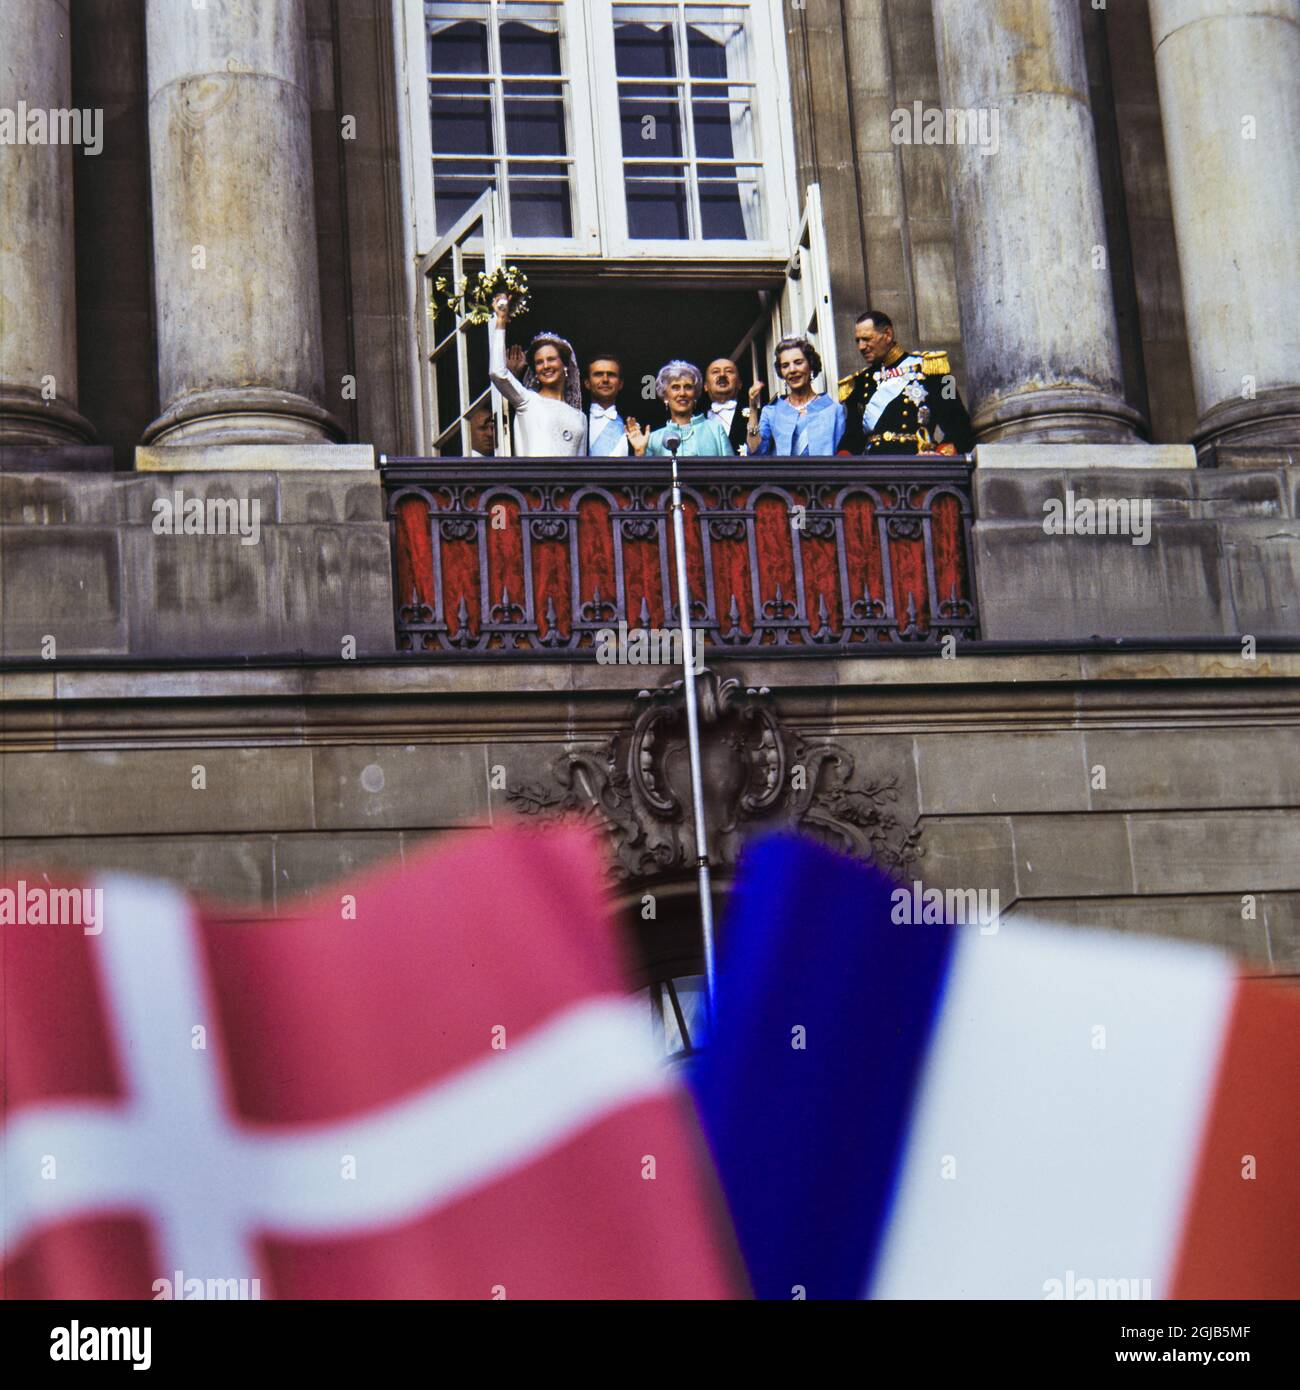 KÃ–PENHAMN 1967-06-10 le mariage de la reine Margrethe II du Danemark et du prince henrik Henrik au palais Amalienborg Foto: Christer Kindahl / Kamerabild / TT / Kod: 3019 Banque D'Images